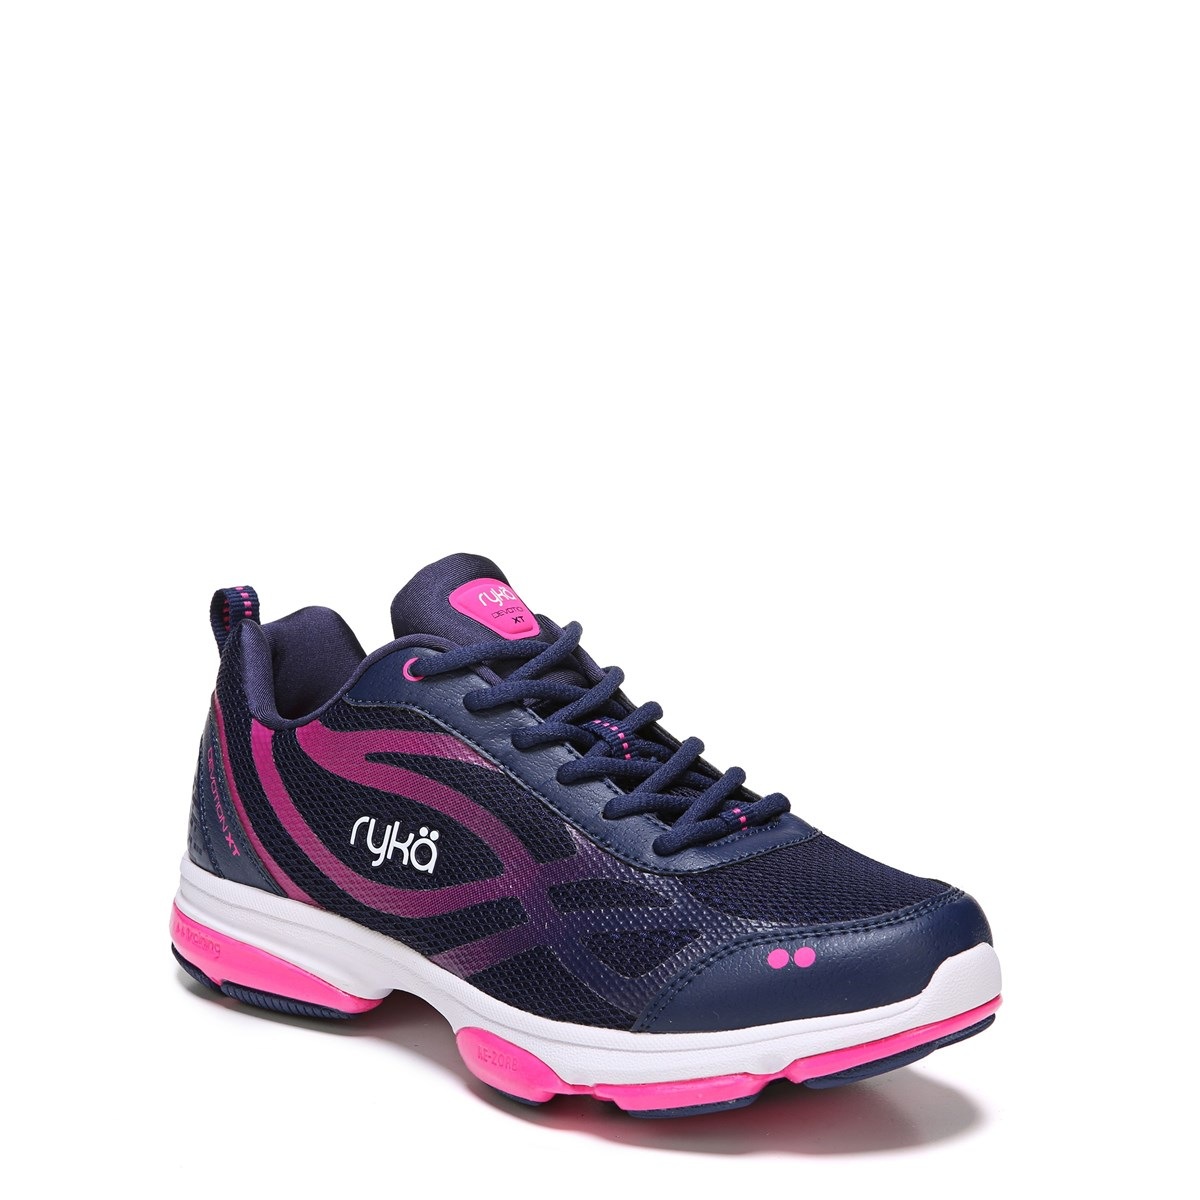 Ryka Devotion XT Training Shoe in Blue/Pink/White